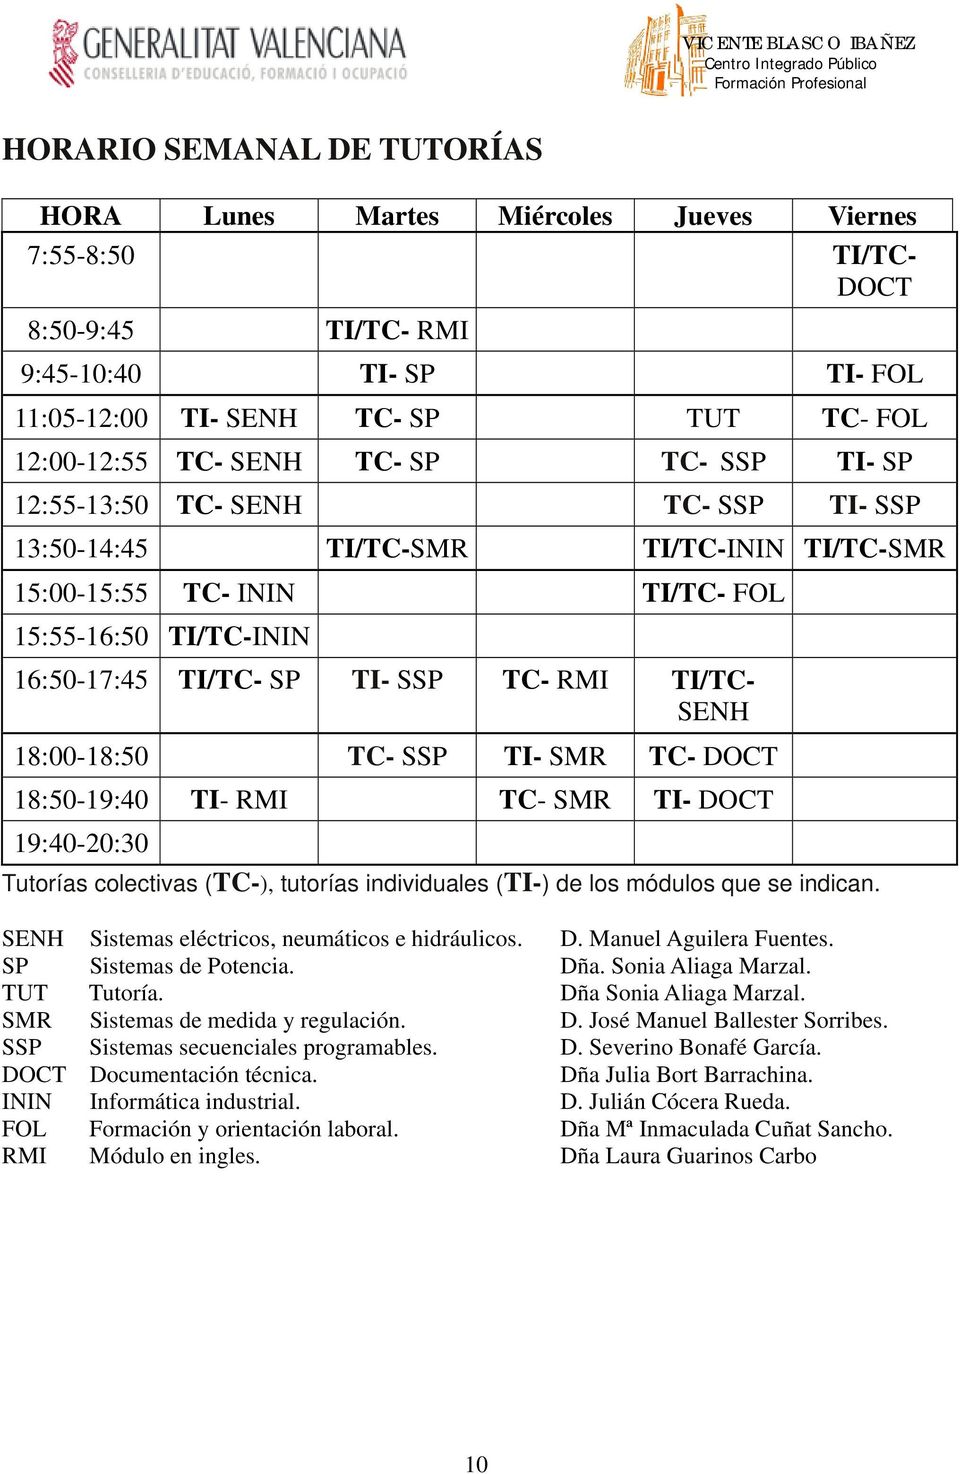 TI/TC- SENH 18:00-18:50 TC- SSP TI- SMR TC- DOCT 18:50-19:40 TI- RMI TC- SMR TI- DOCT 19:40-20:30 Tutorías colectivas (TC-), tutorías individuales (TI-) de los módulos que se indican.